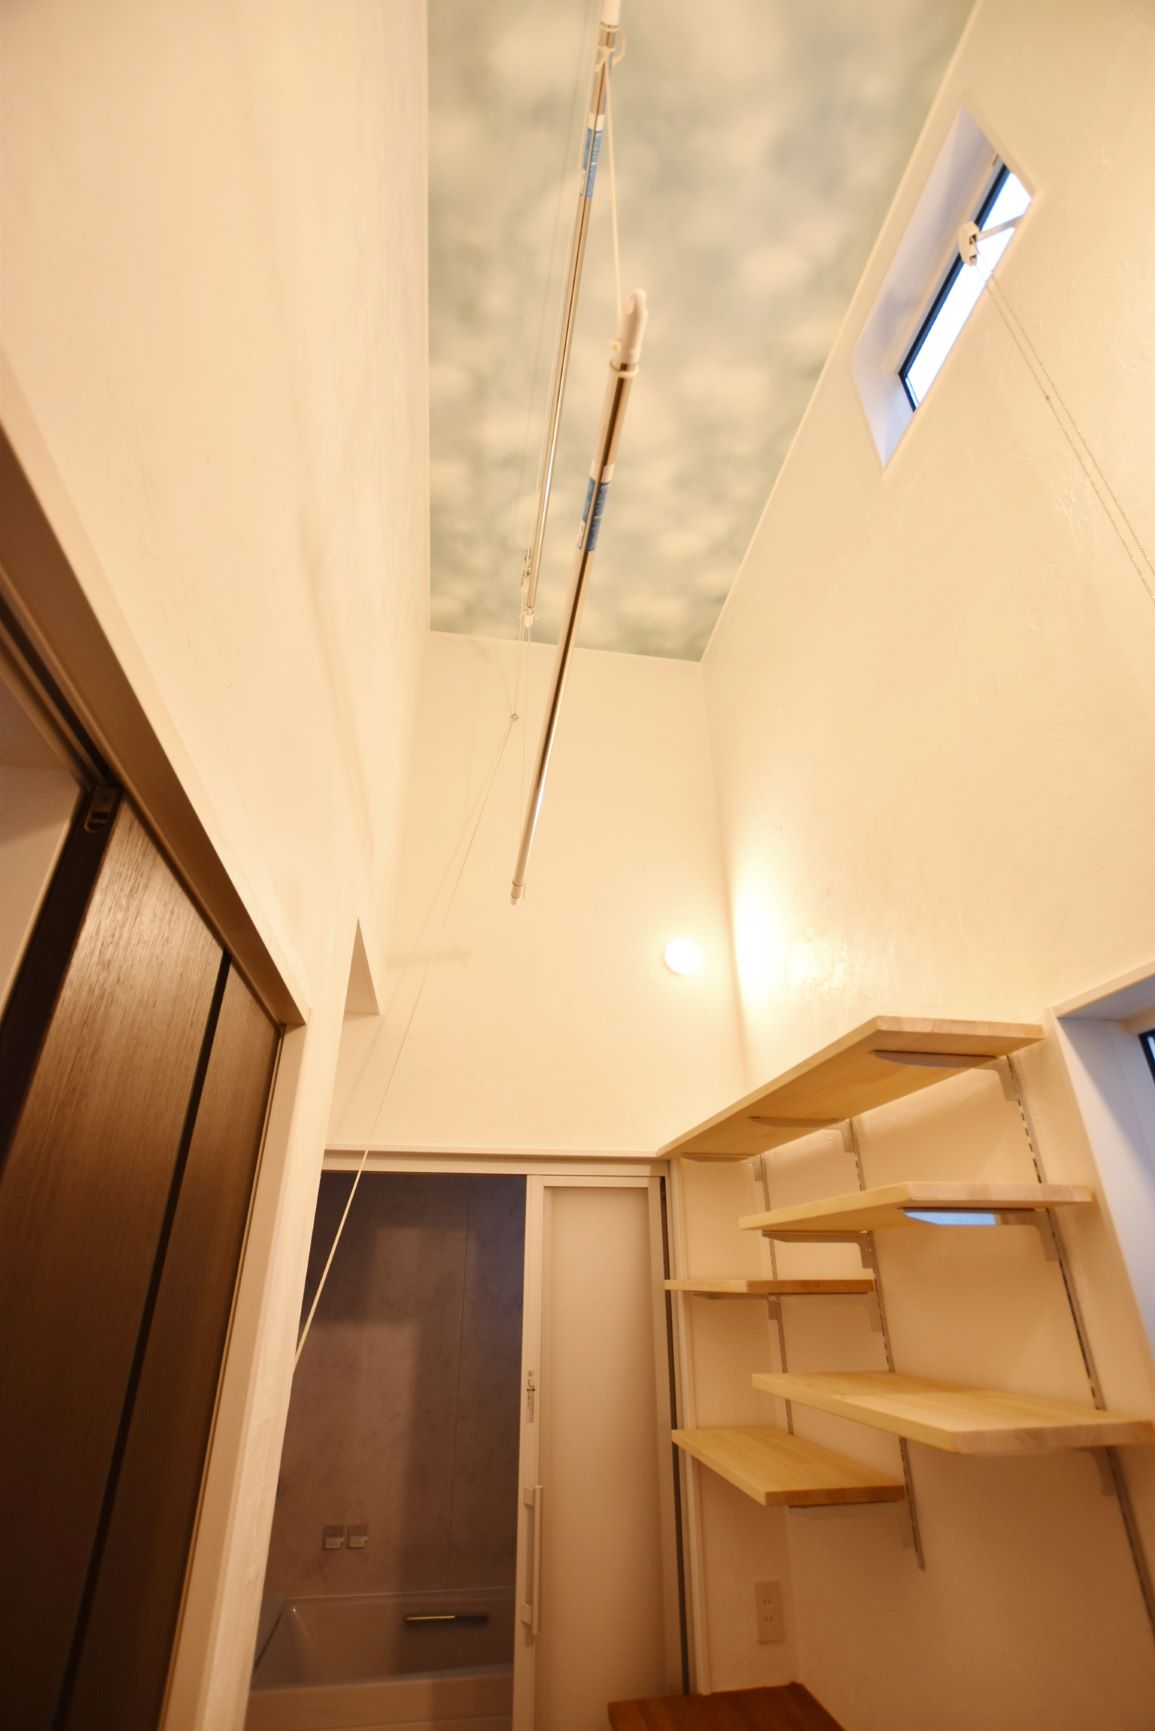 一階でも天井高を上げて室内物干しを設置しました。お空みたいな天井壁紙がいい感じです。